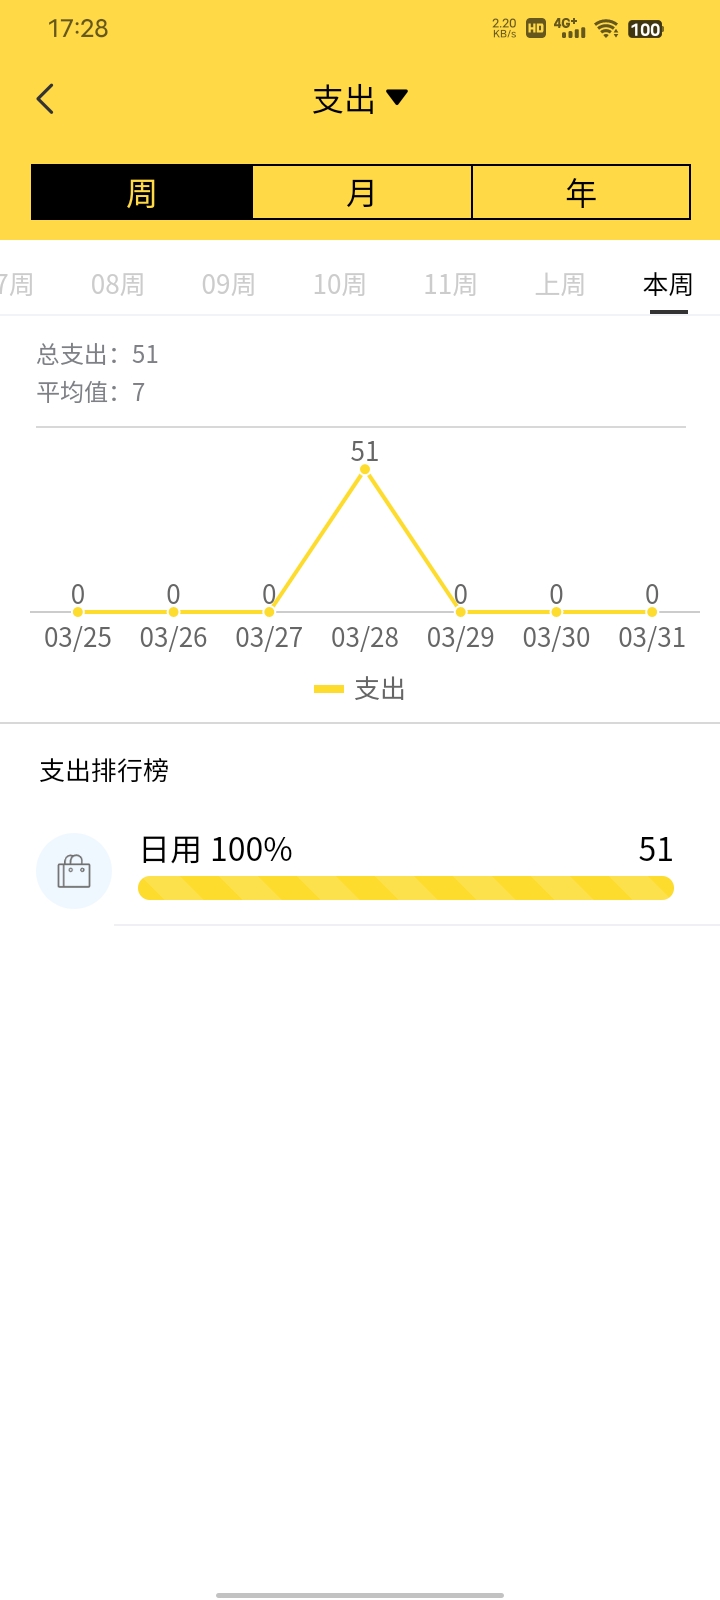 鑫荣记账软件最新版截图1: